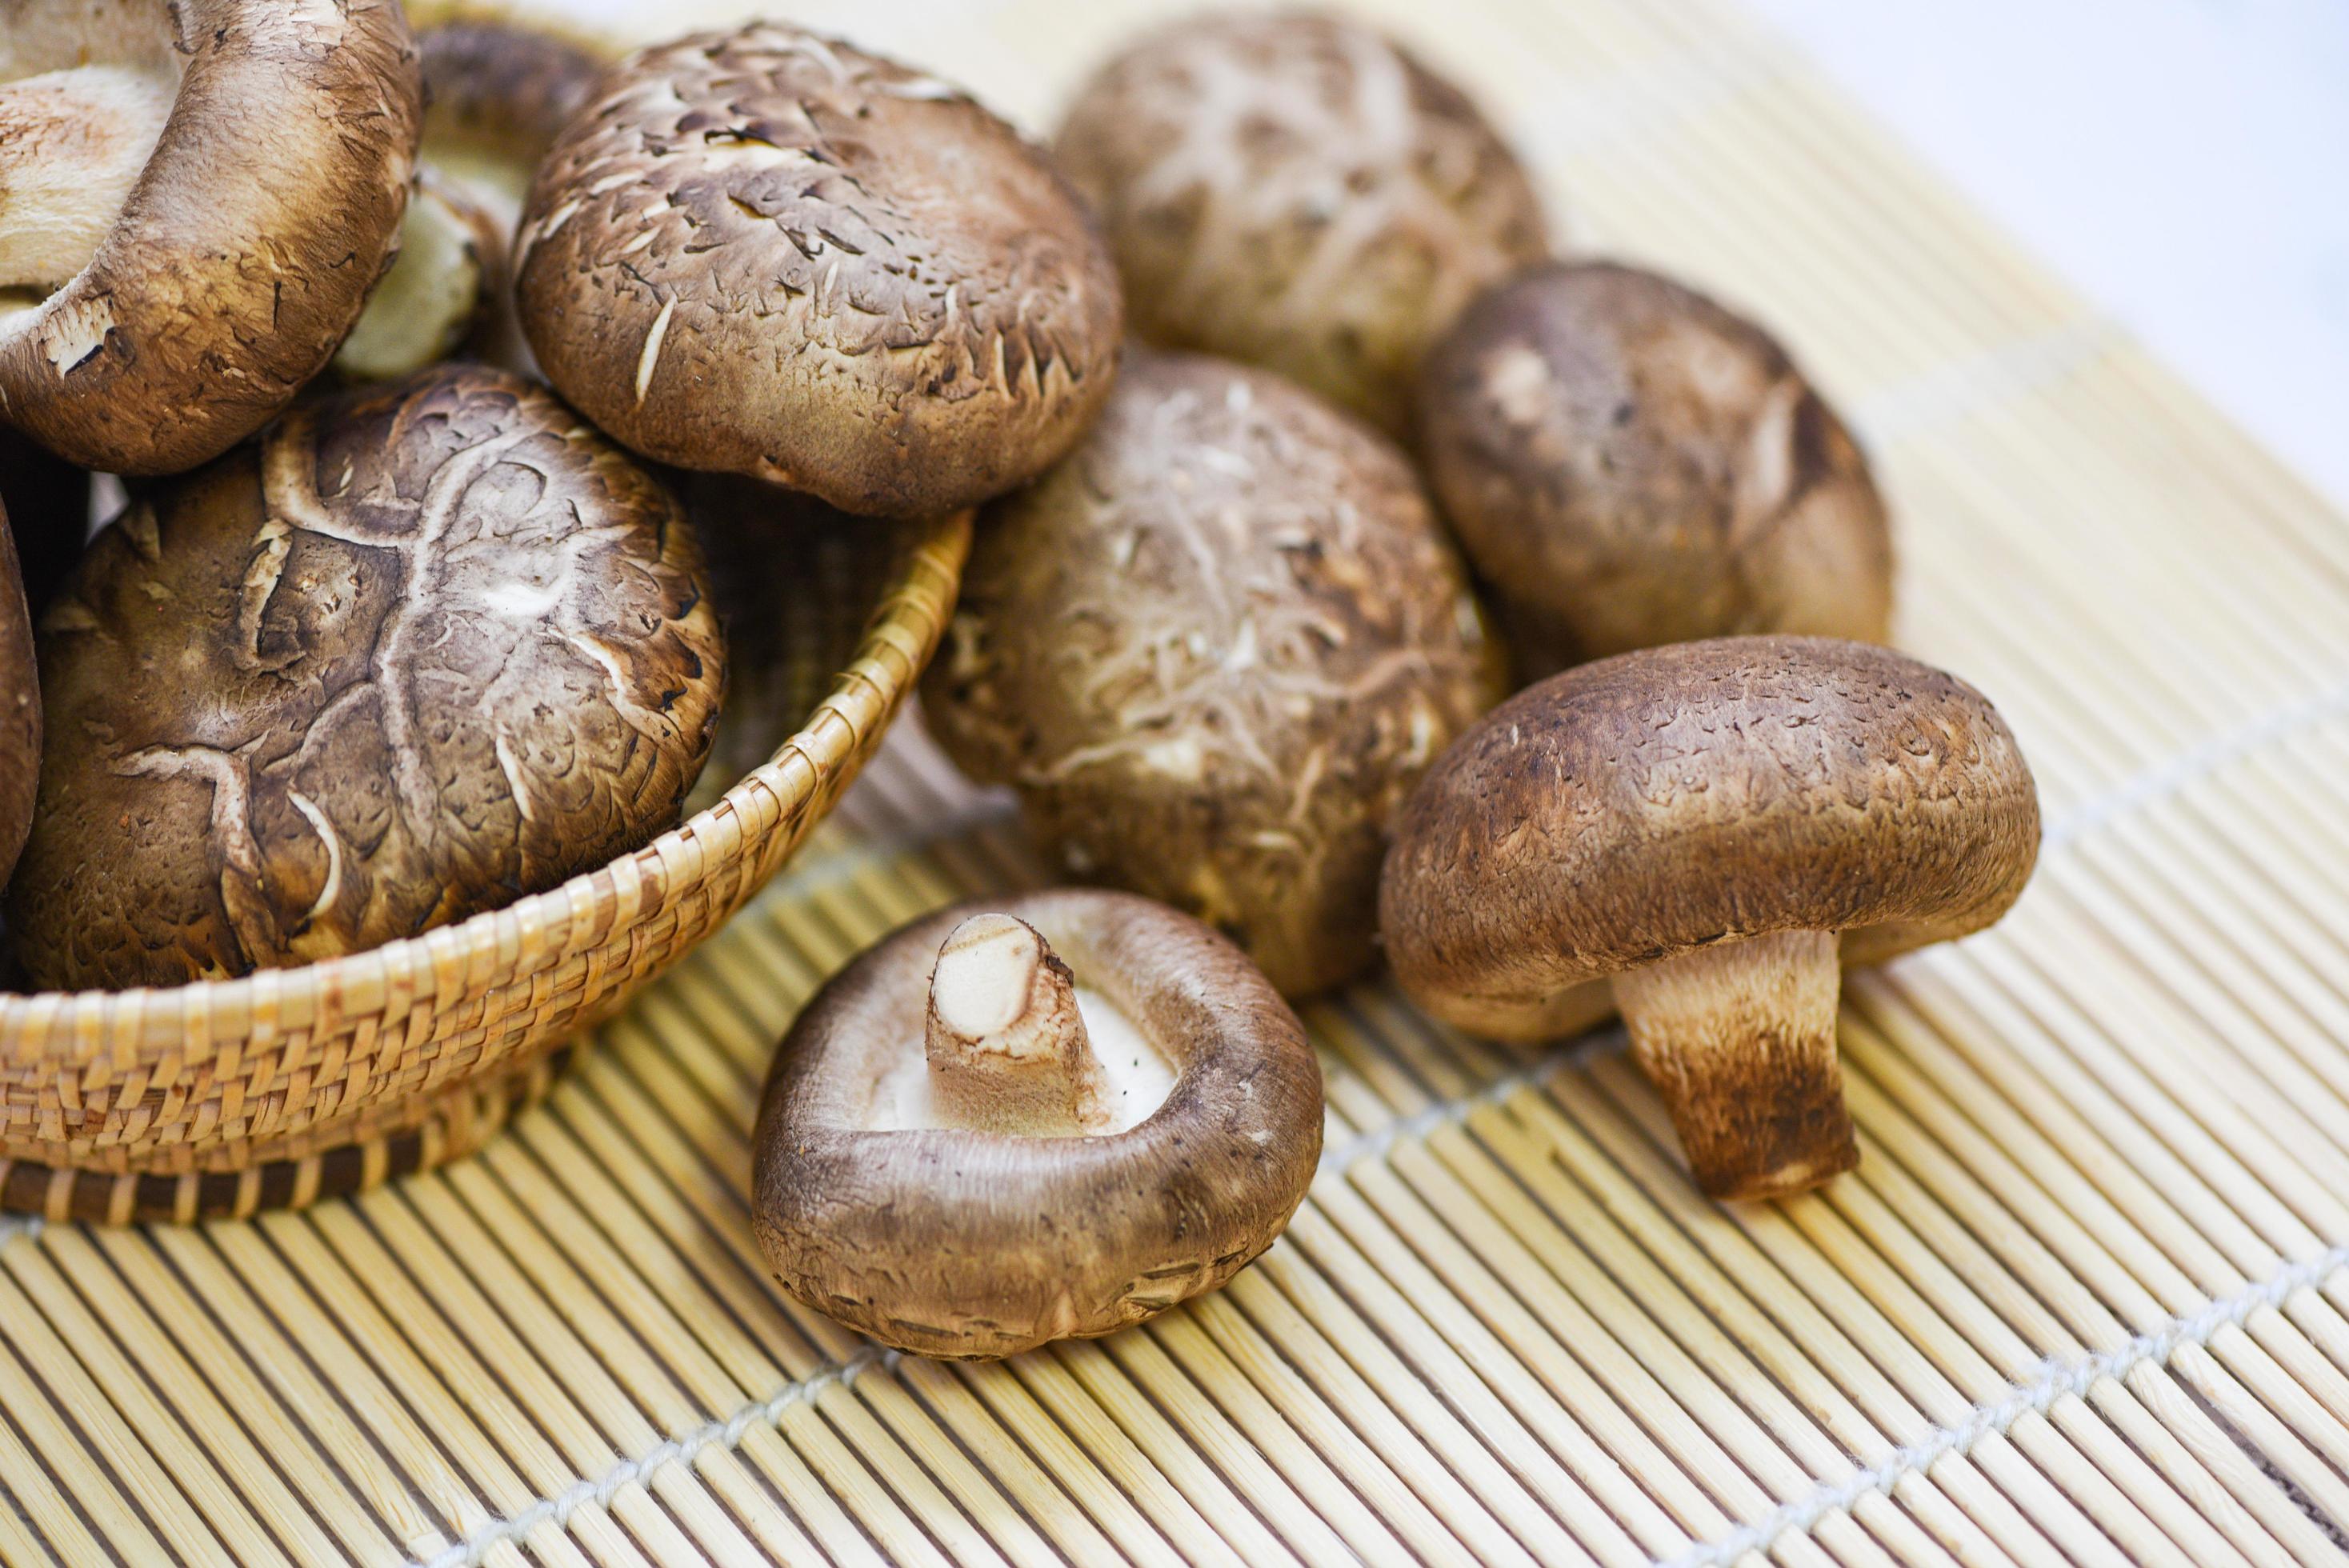 funghi freschi sul cesto e sullo sfondo della tavola in legno - funghi shiitake foto